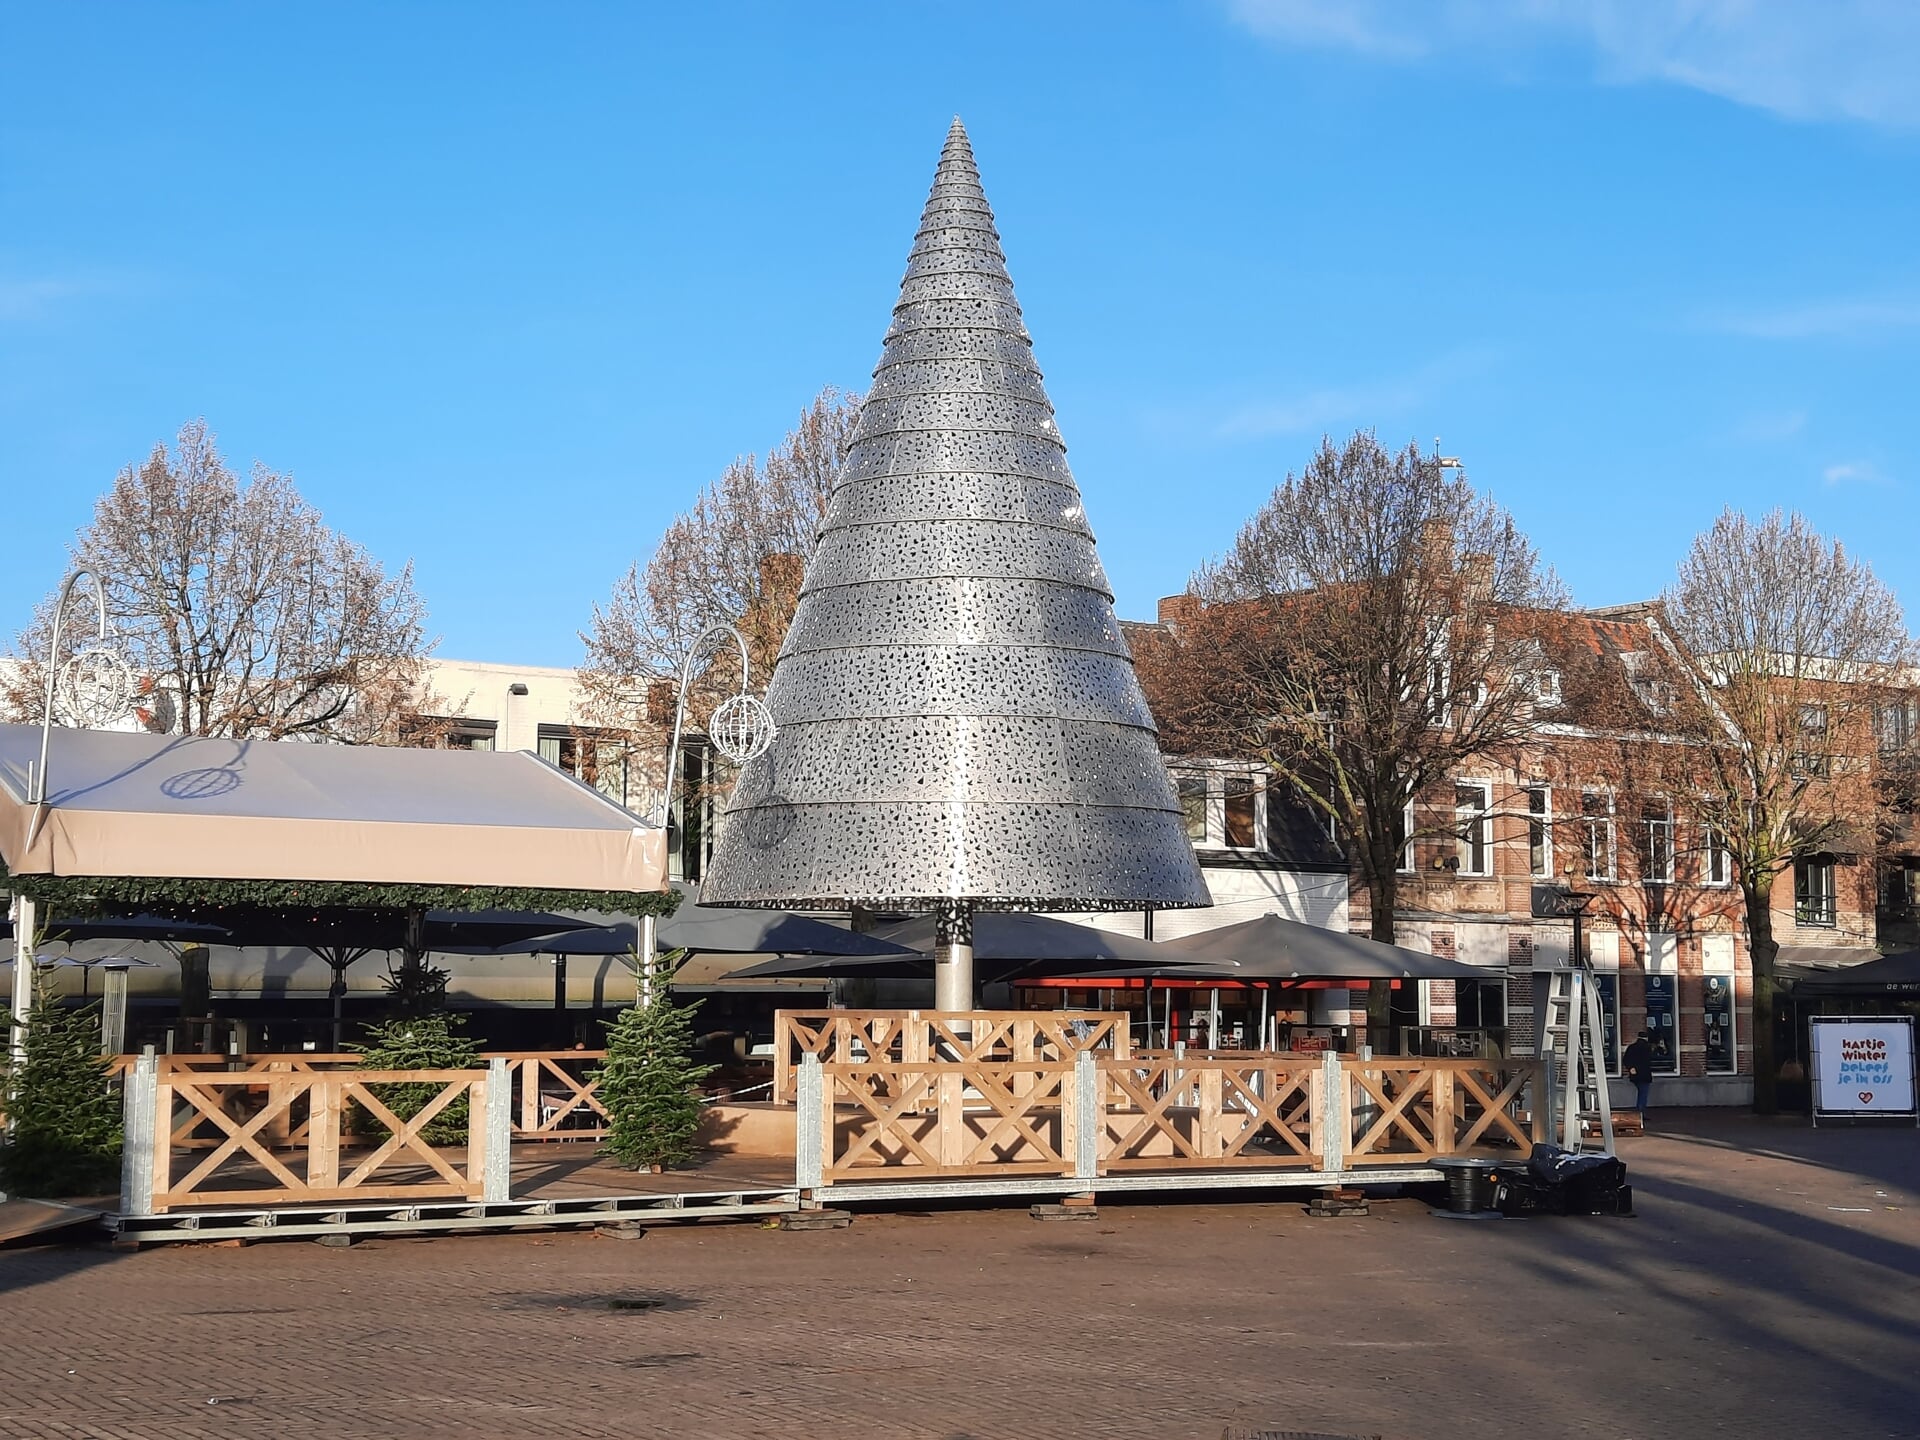 De metalen kerstboom in het Osse centrum.